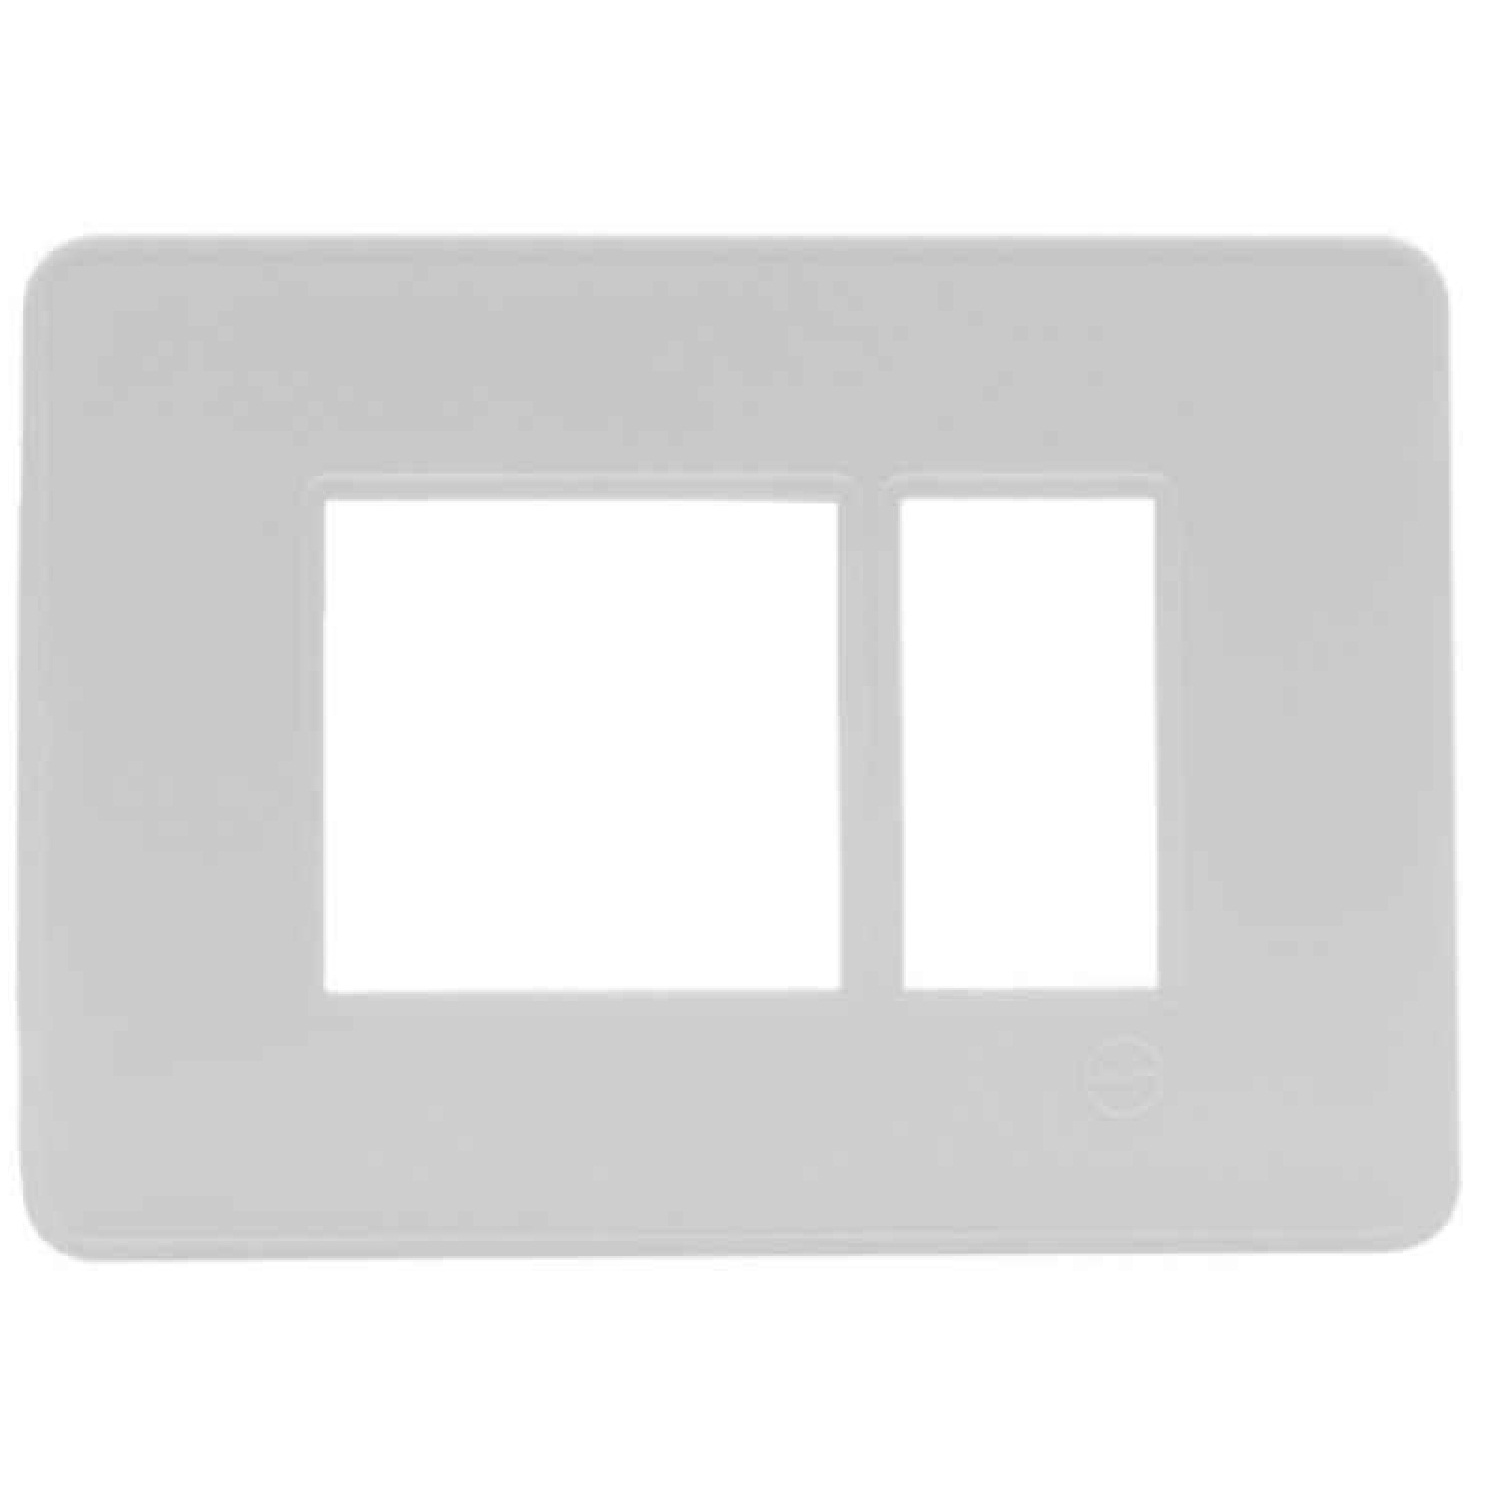  LT Engem  3 Module (Regular) Cover Plate with Base Frame- White